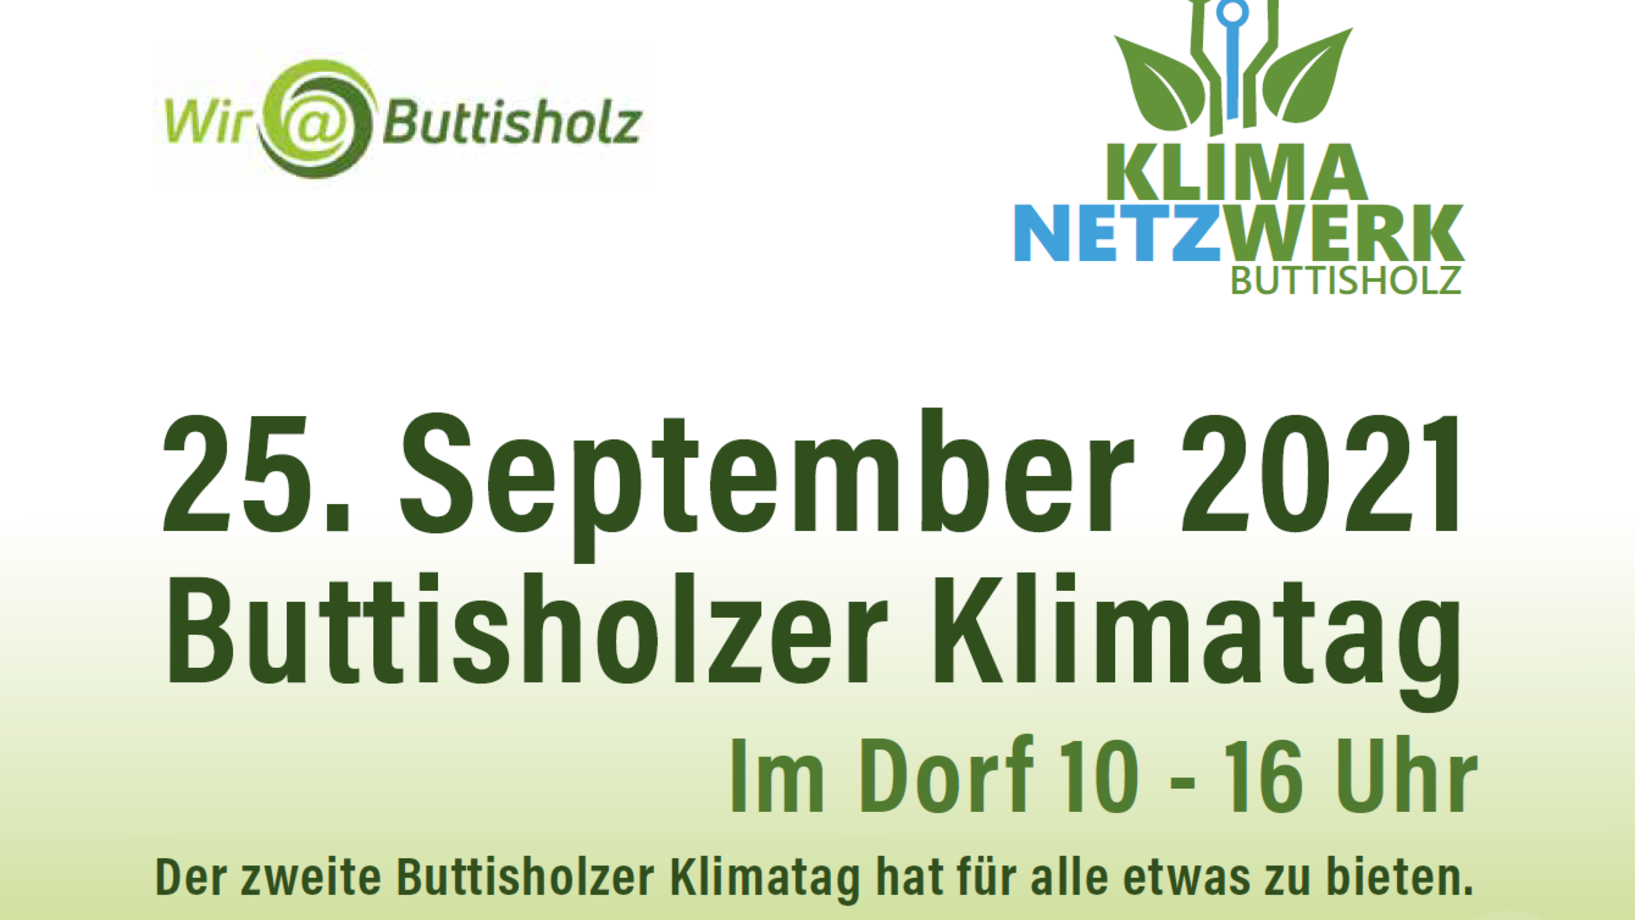 Das Klimanetzwerk Buttisholz lädt ein zum Aktionstag